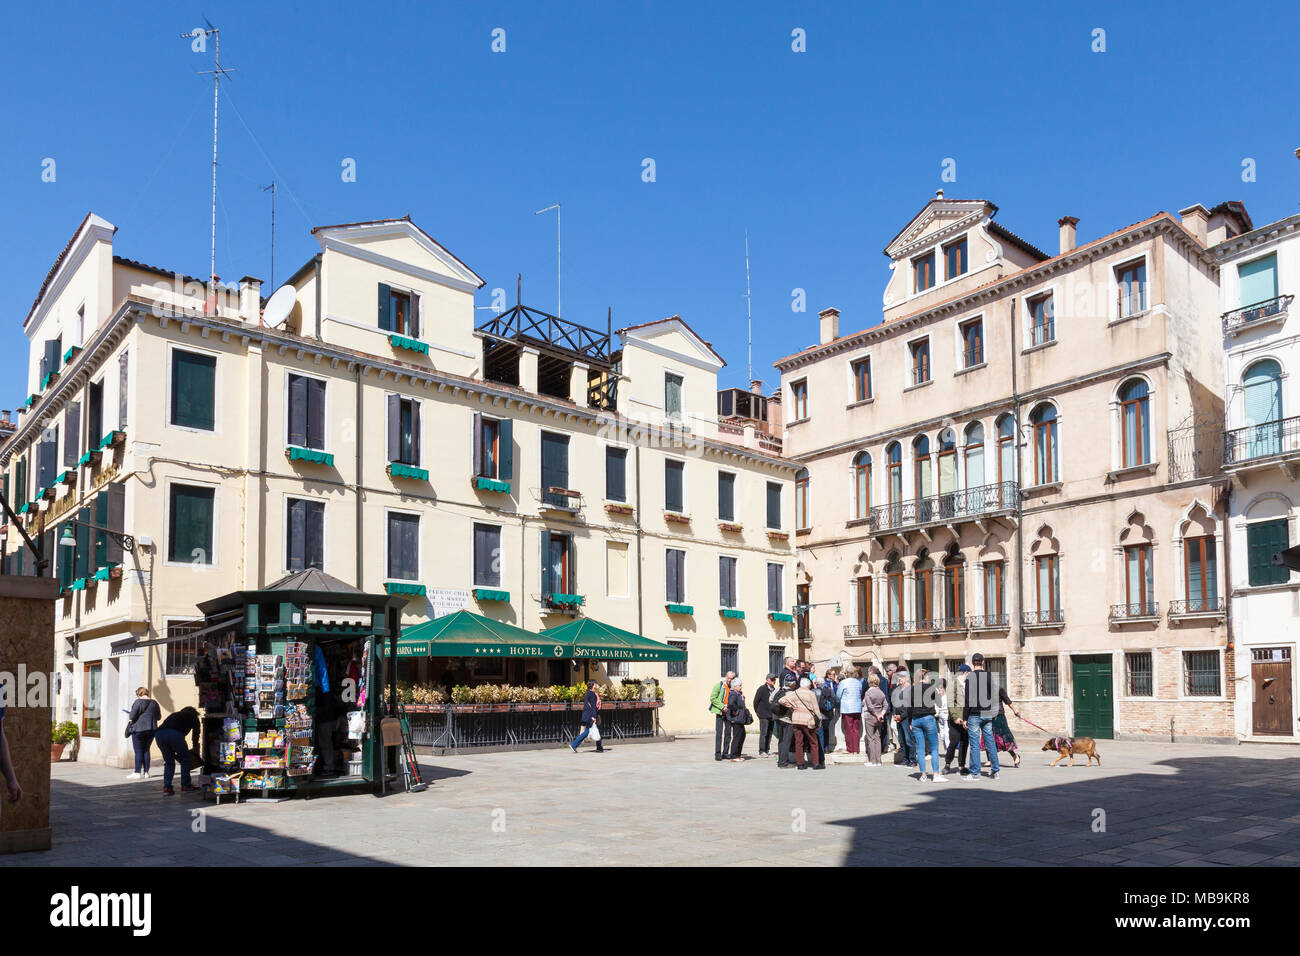 Und Campo Santa Marina Hotel Santa Marina, Castello, Venedig, Venetien, Italien mit einer Reisegruppe gatheredd um ein Pozzo oder auch Kopf und News Stand Stockfoto